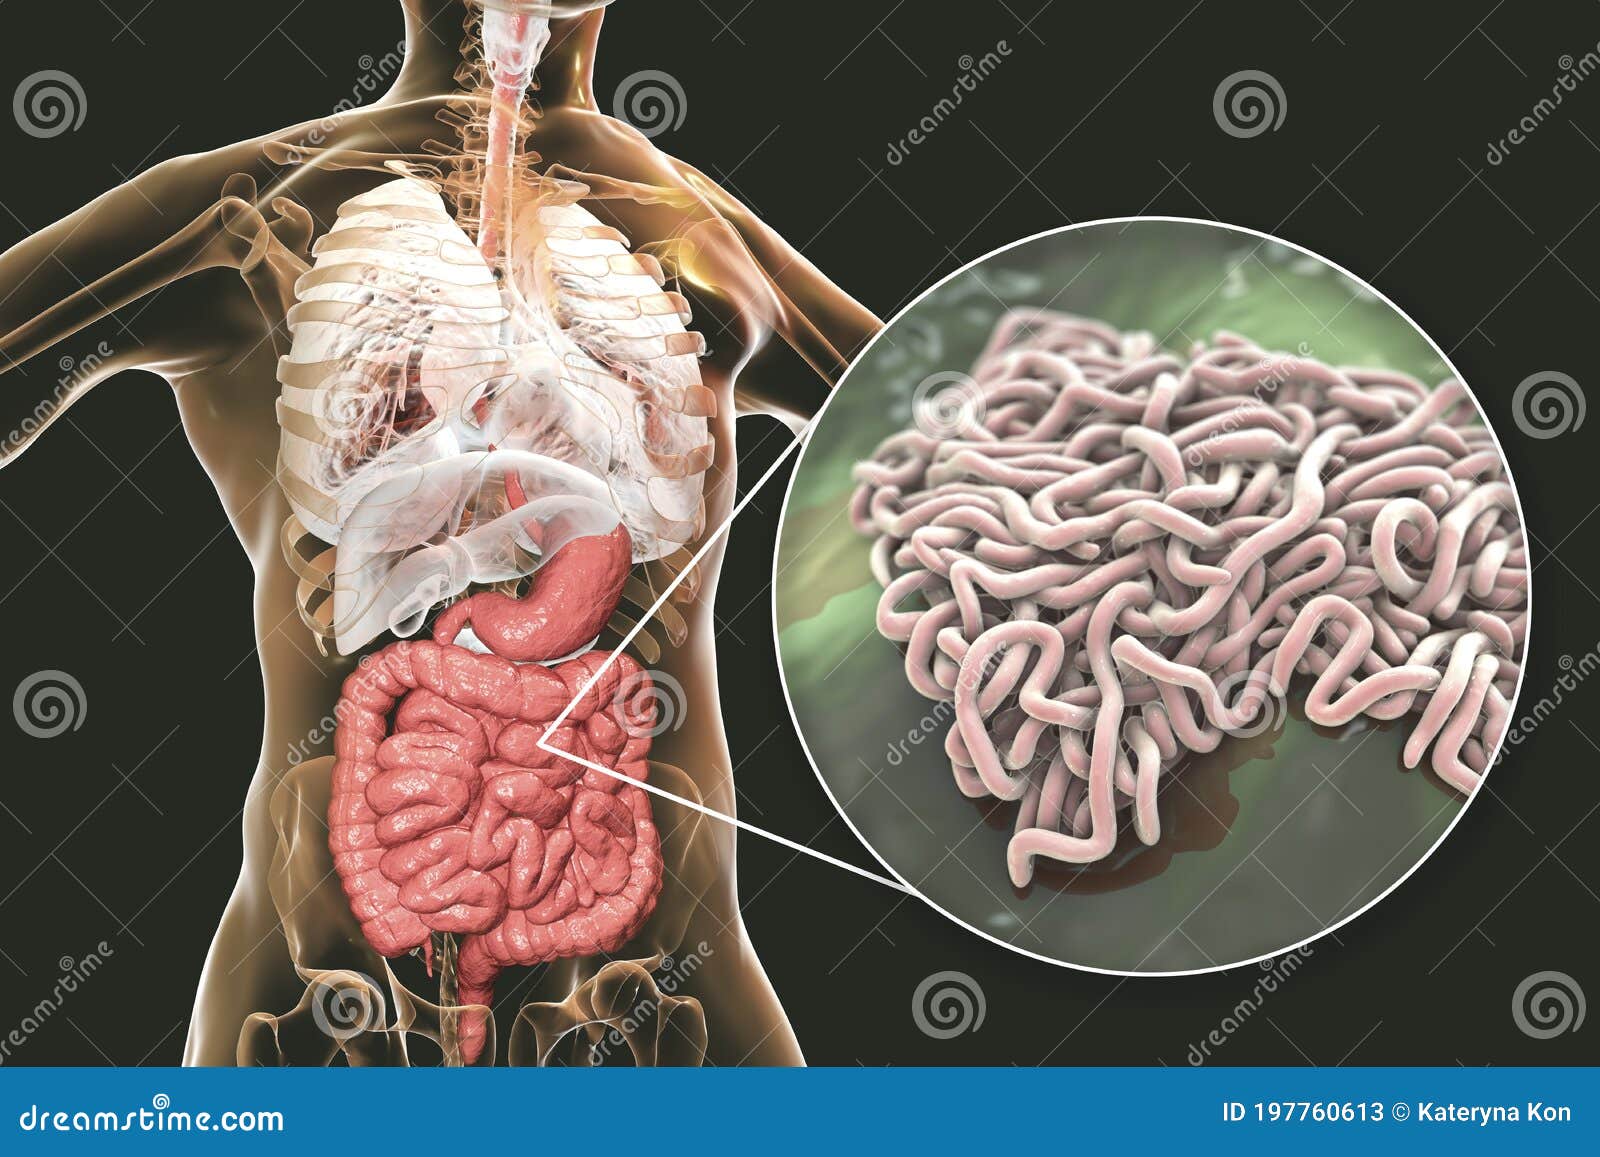 猪肠鞭虫病-吉林大学动物医学学院标本信息管理平台